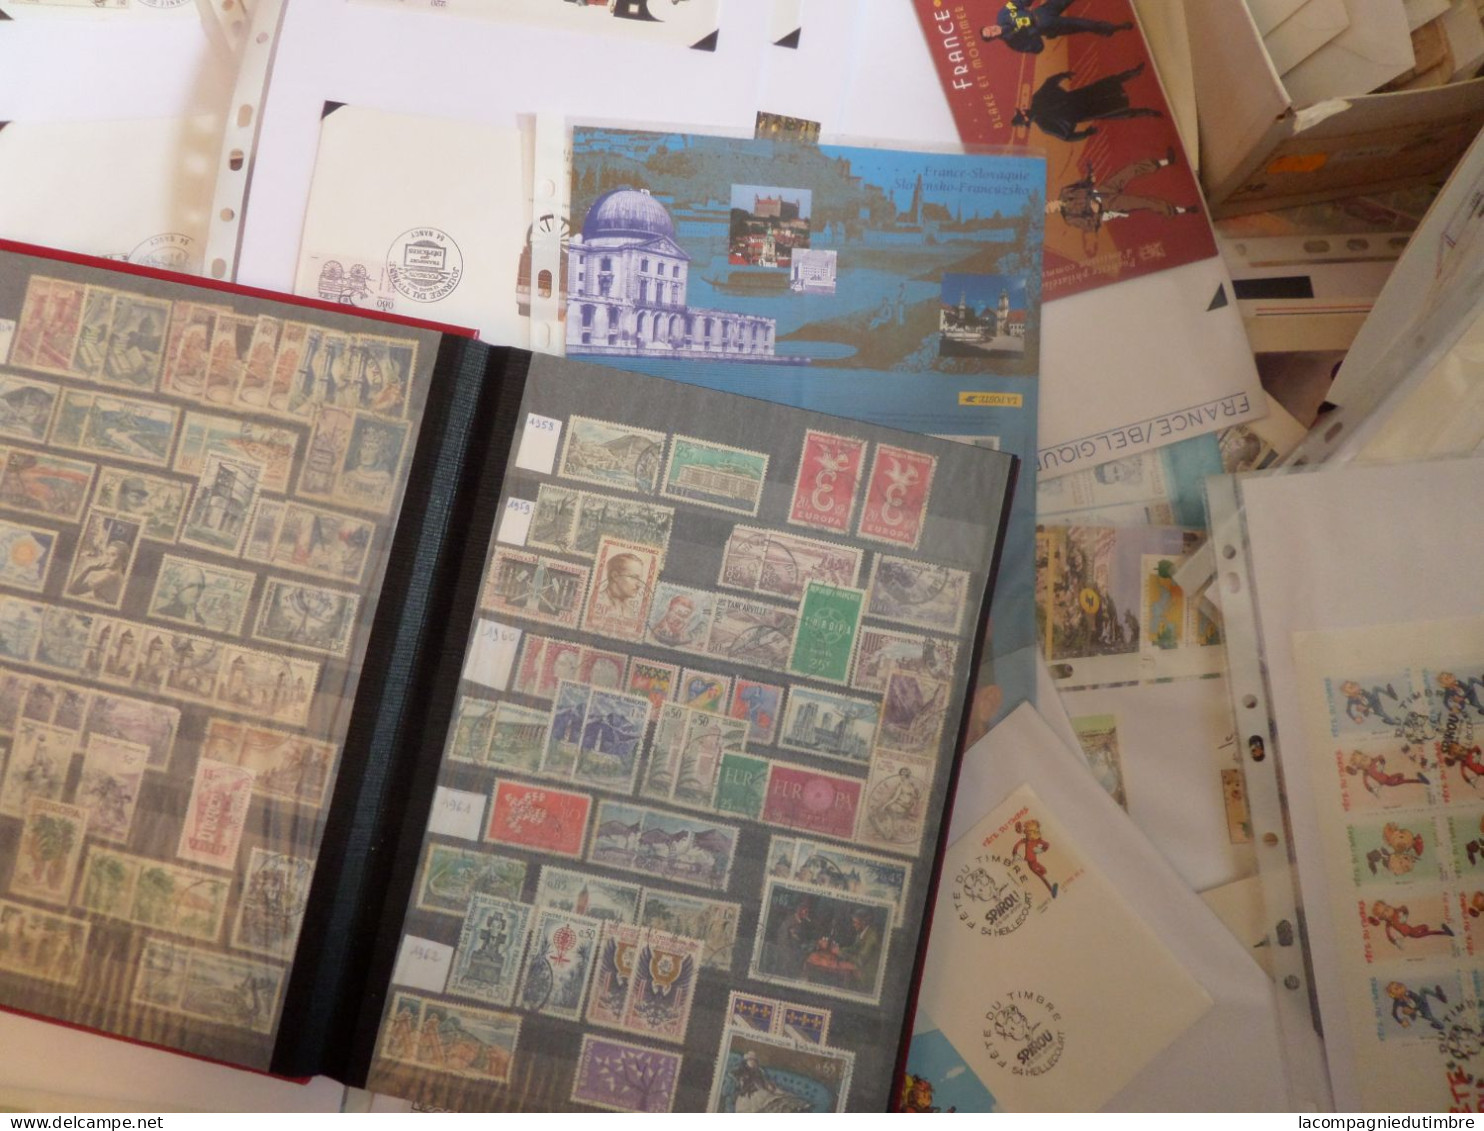 Enorme vrac de plusieurs milliers de timbres de France **/*/obl. 1900/2010. Très forte cote!  A SAISIR!!!!